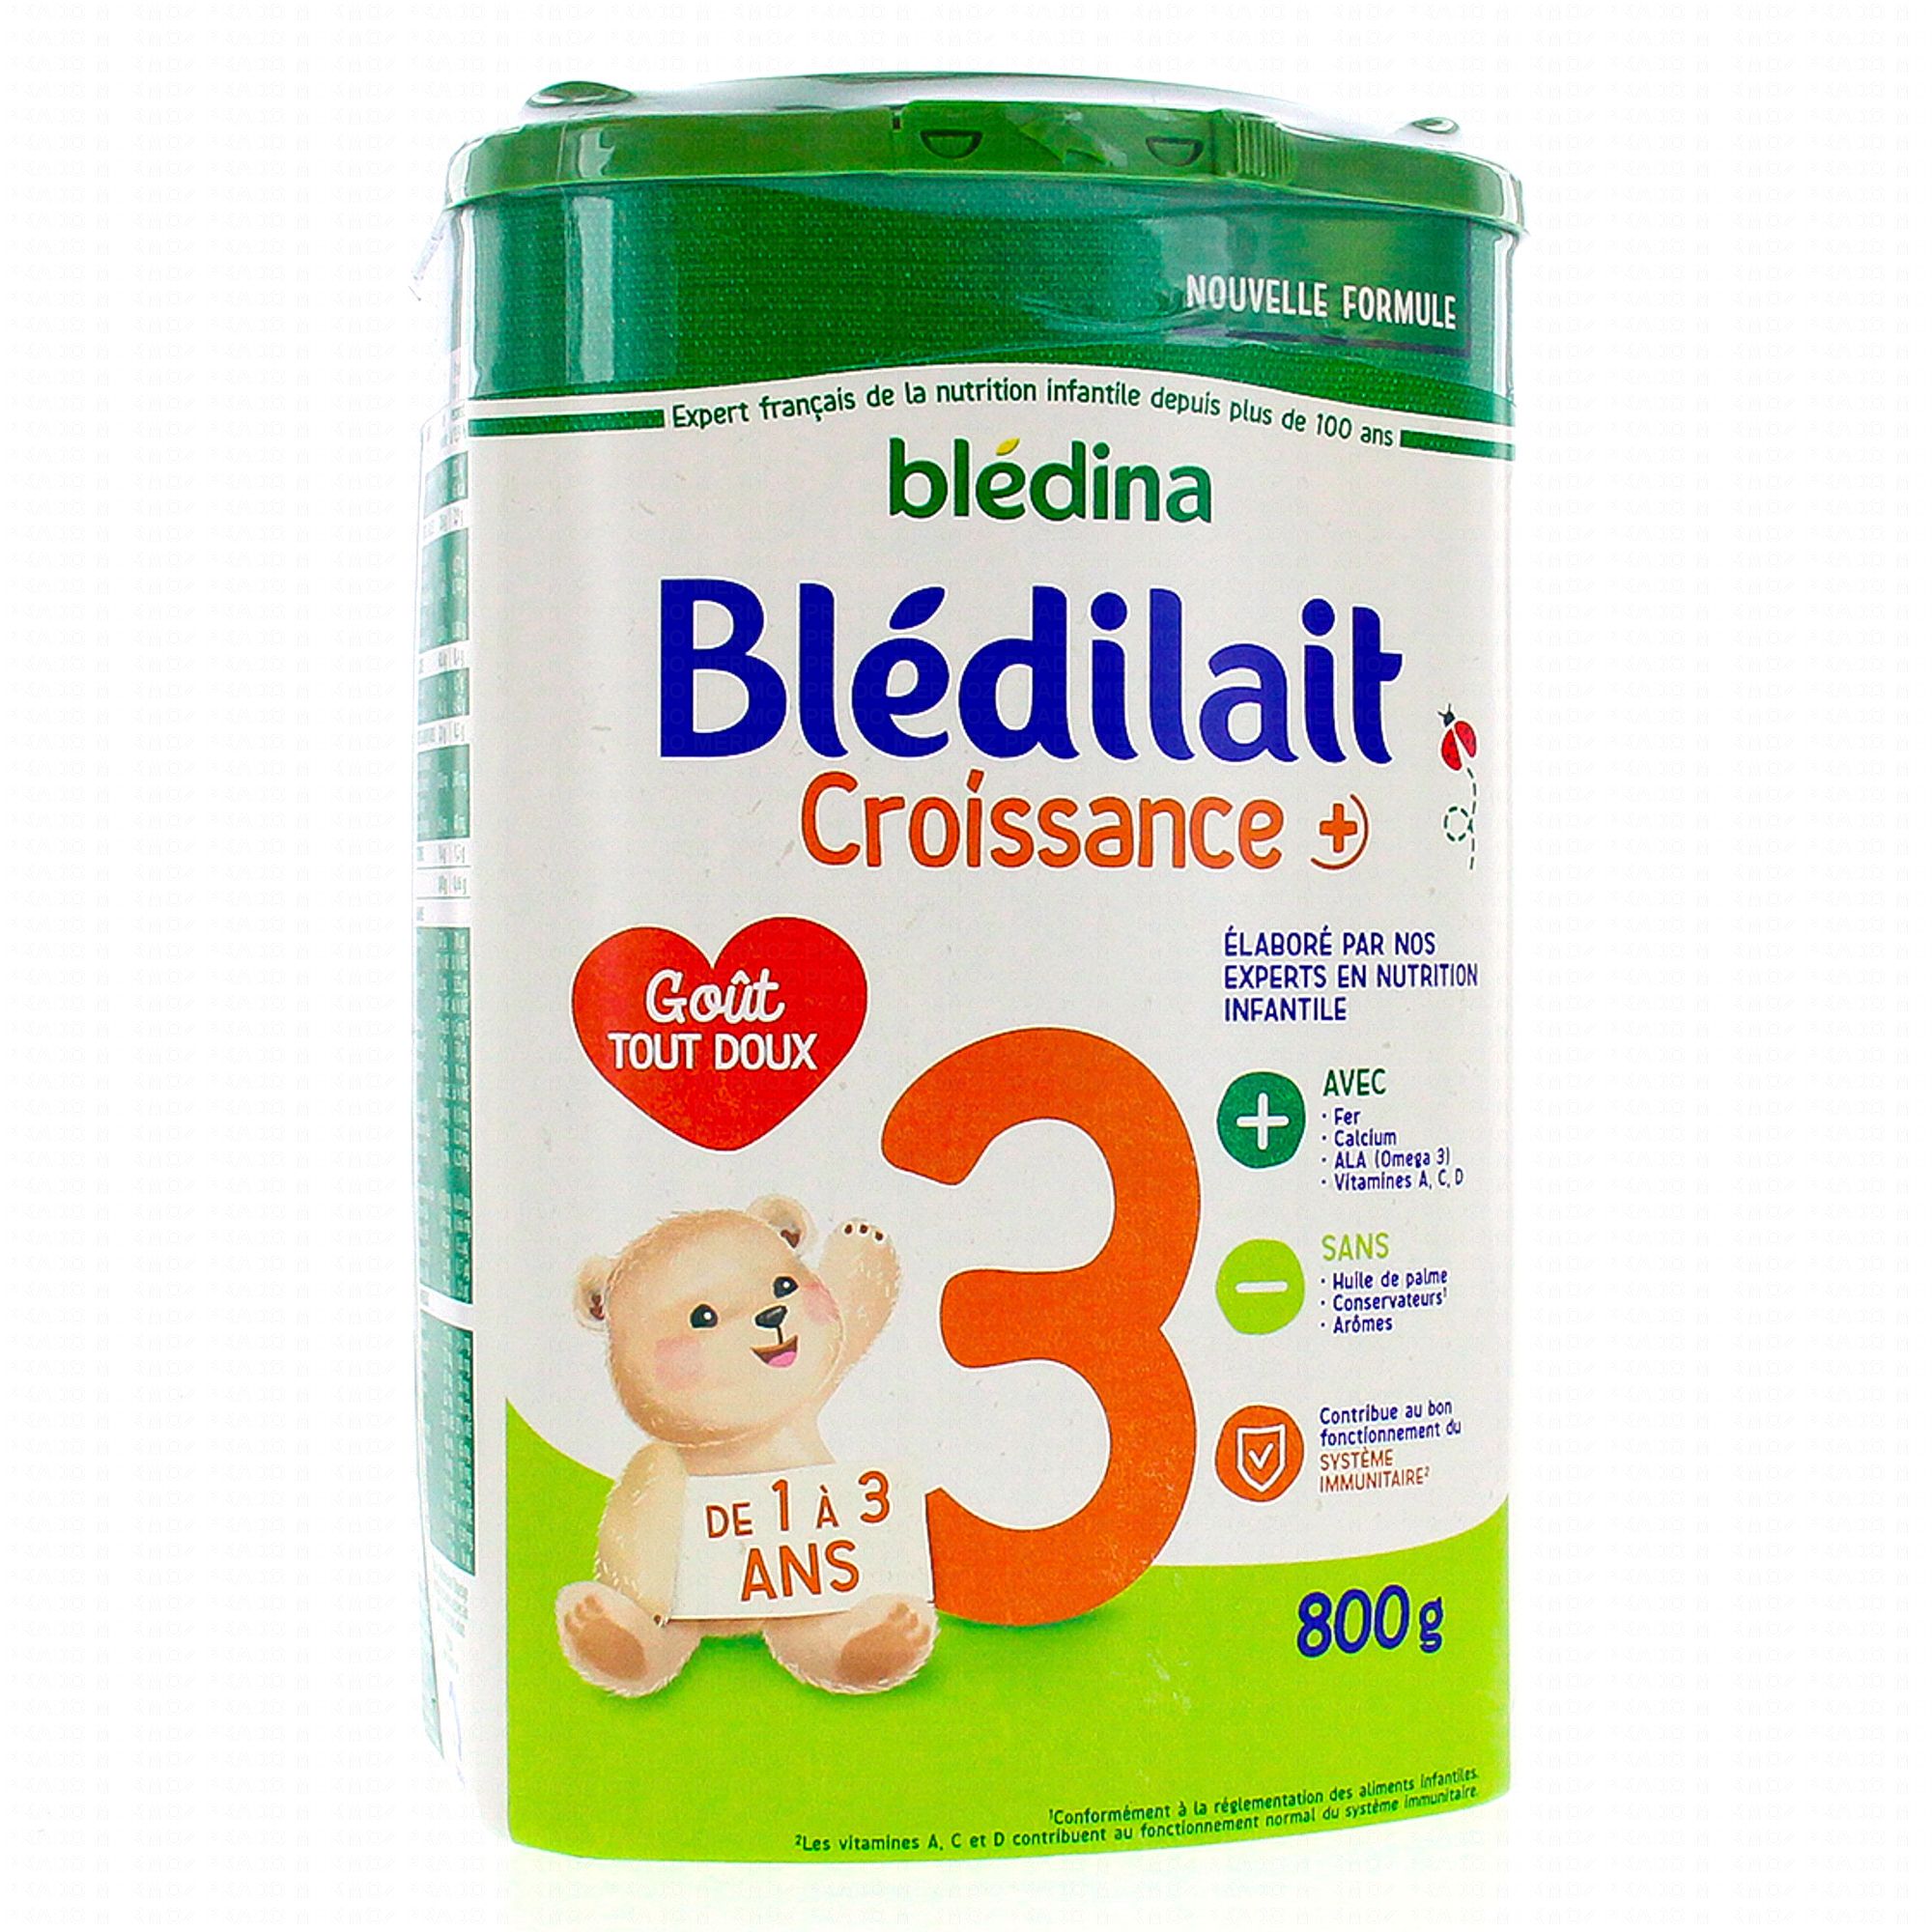 BLEDILAIT Croissance + Maxi Format 1,6kg De 1 à 3 ans - Blédina - 1600 g